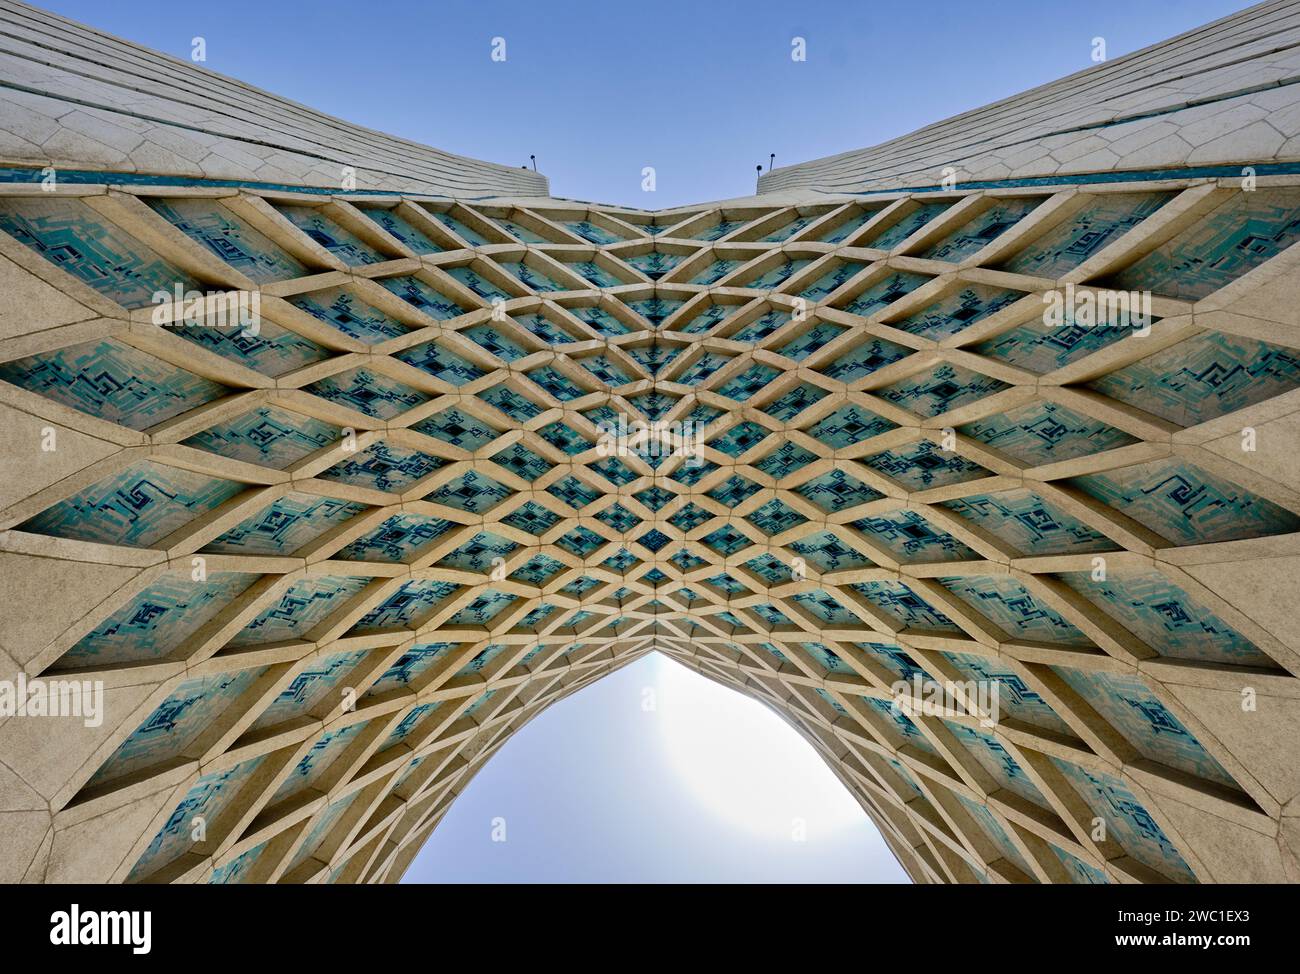 Teheran (Teheran), Iran, 06.25.2023: Der Azadi-Turm (Shahyad-Turm). Details zum Azadi-Turm und -Platz. Stockfoto